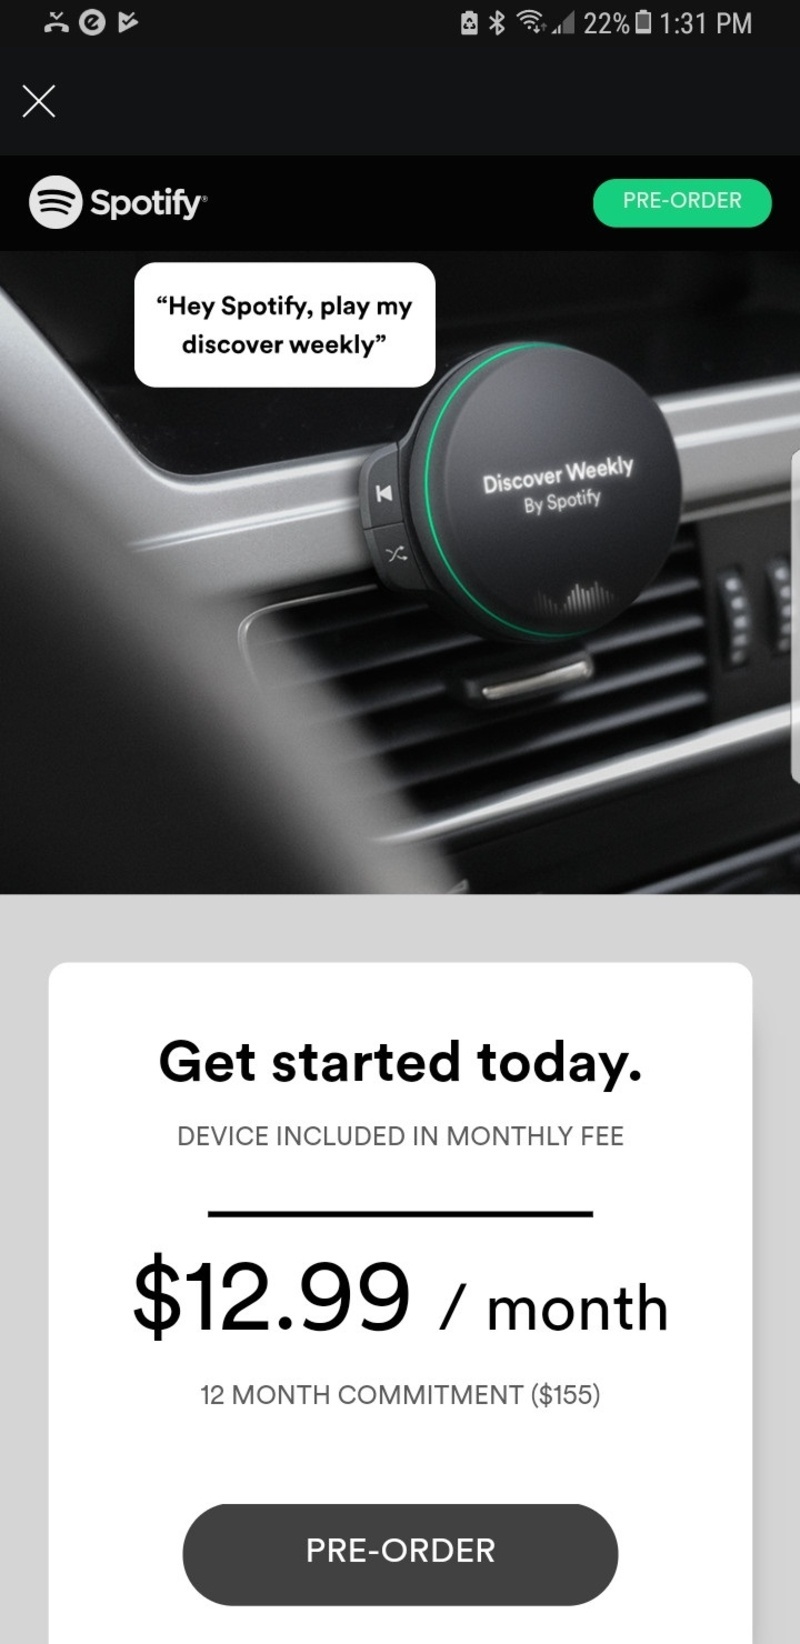 Spotify có thể ra mắt thiết bị đầu tiên dành cho xe hơi?